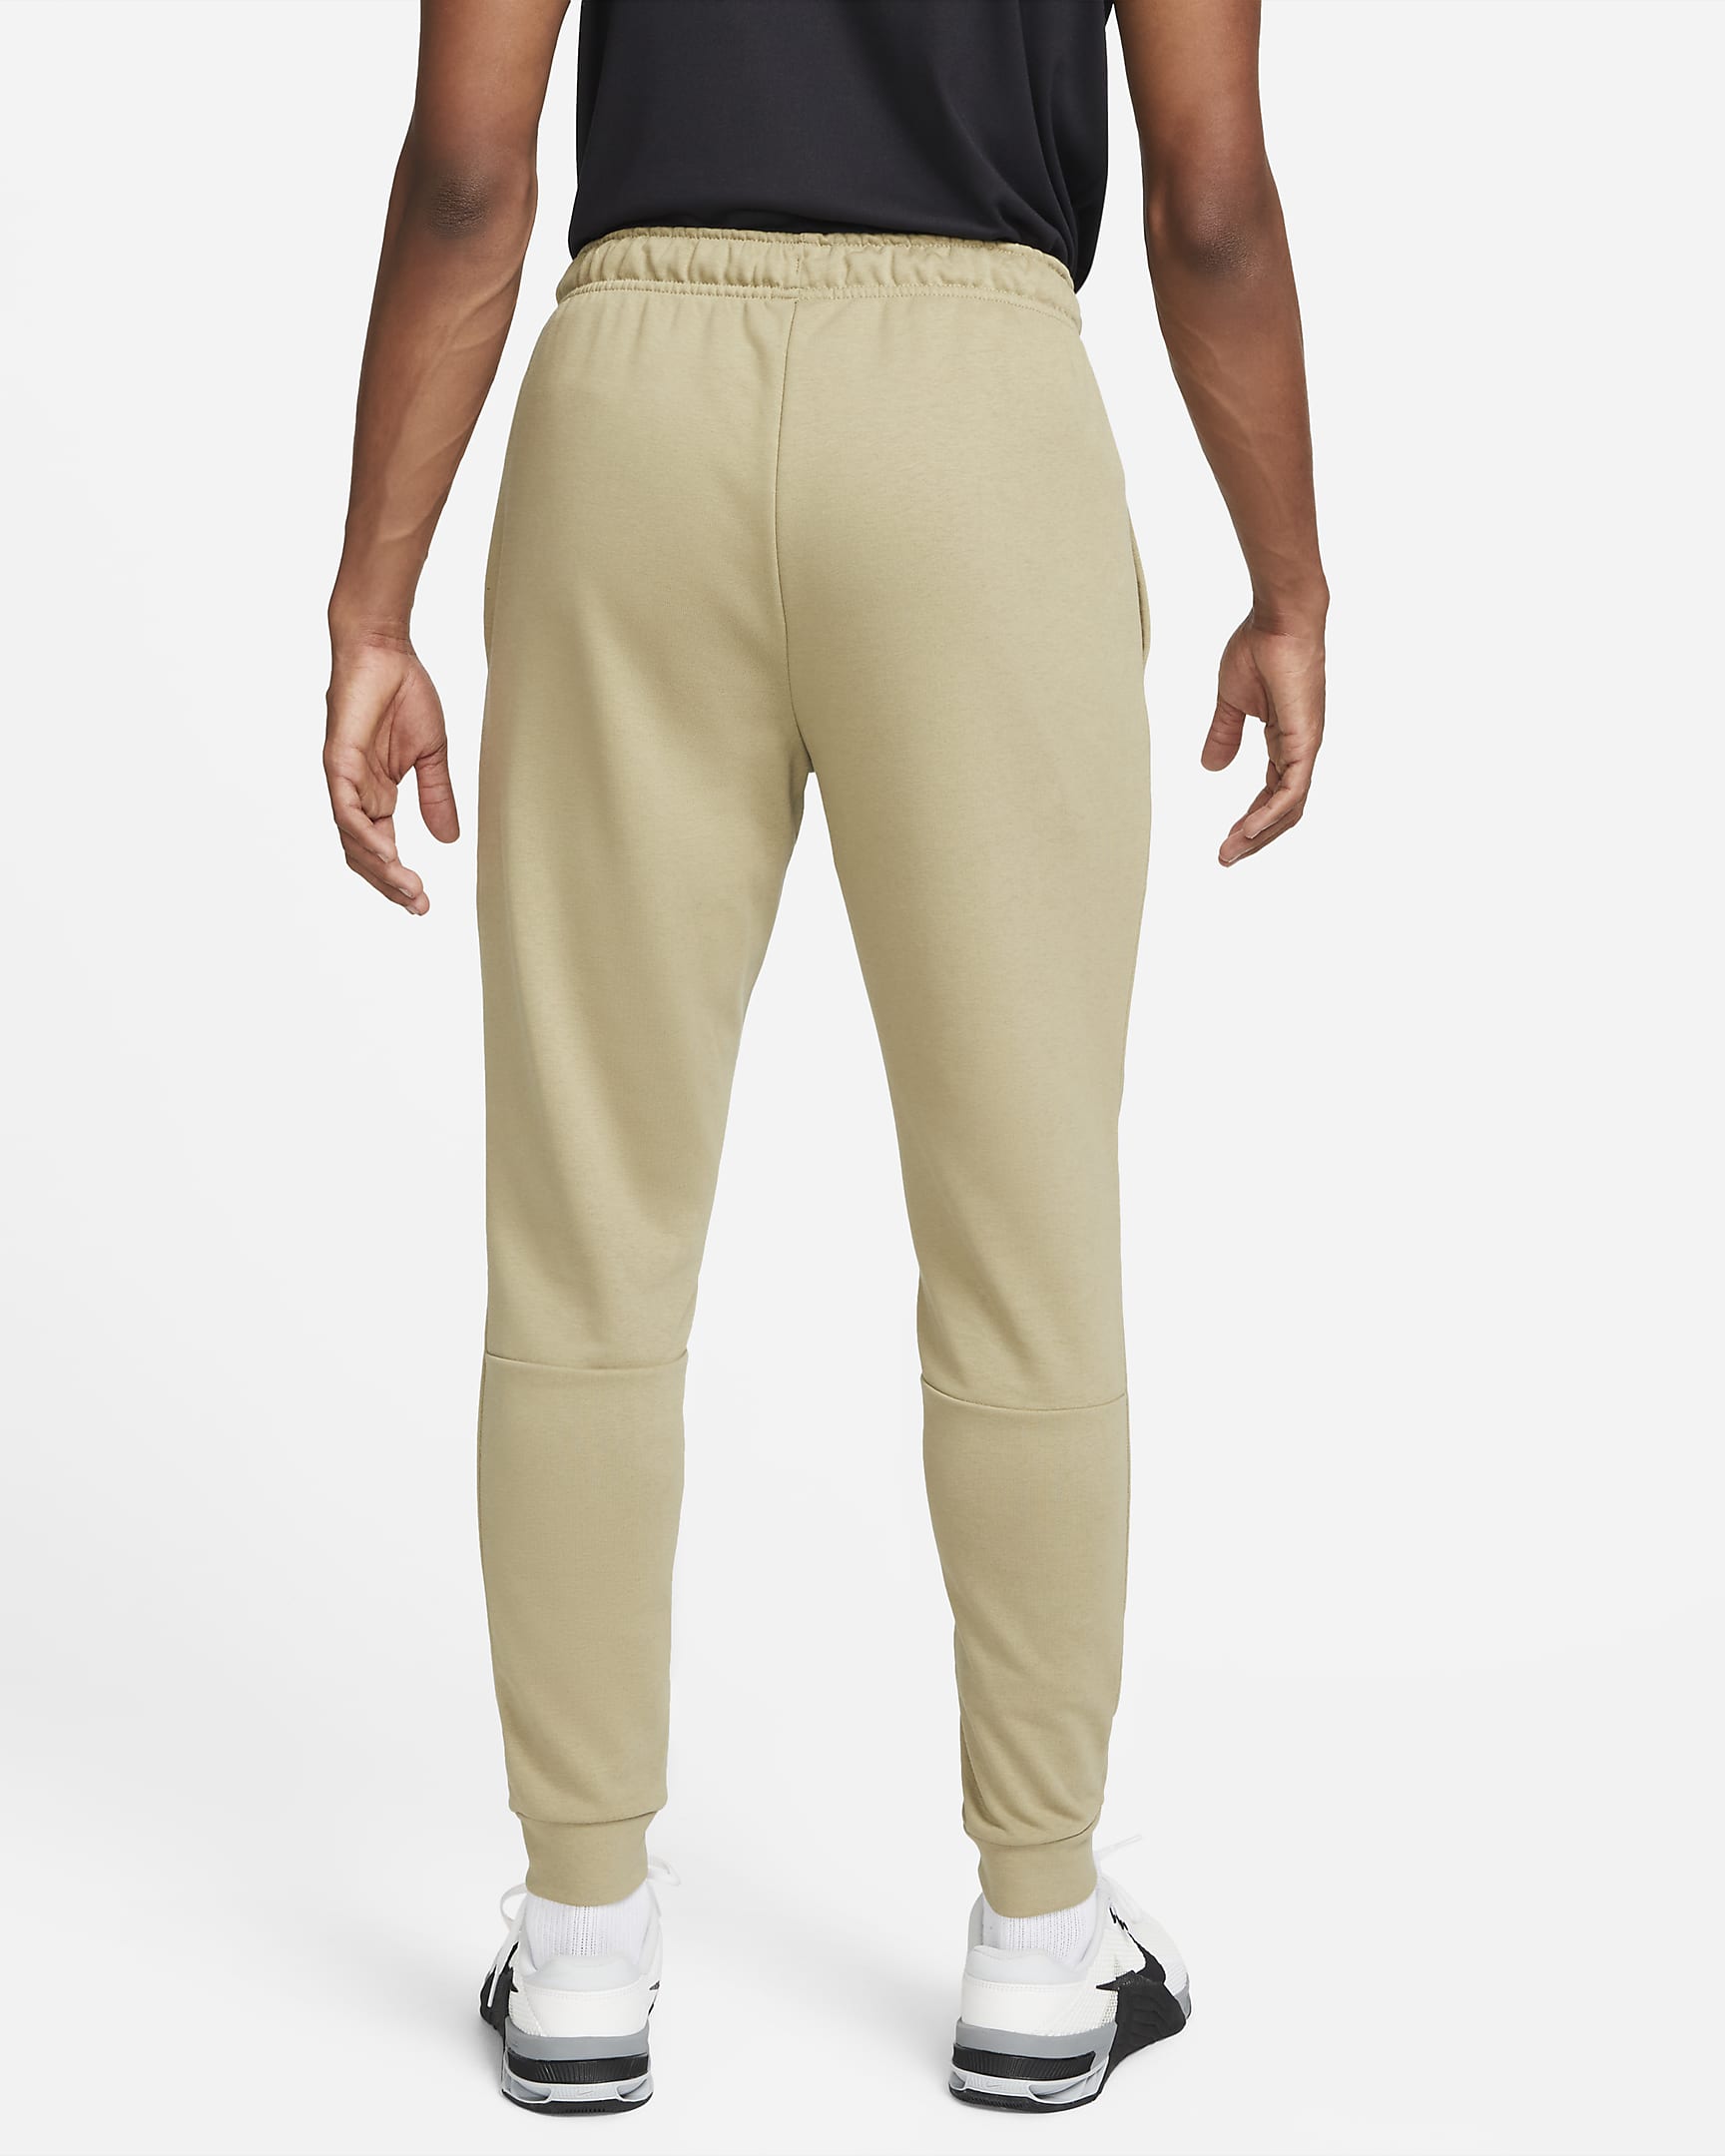 Nike Dry Men's Dri-FIT Taper Fitness Fleece Trousers. Nike HU